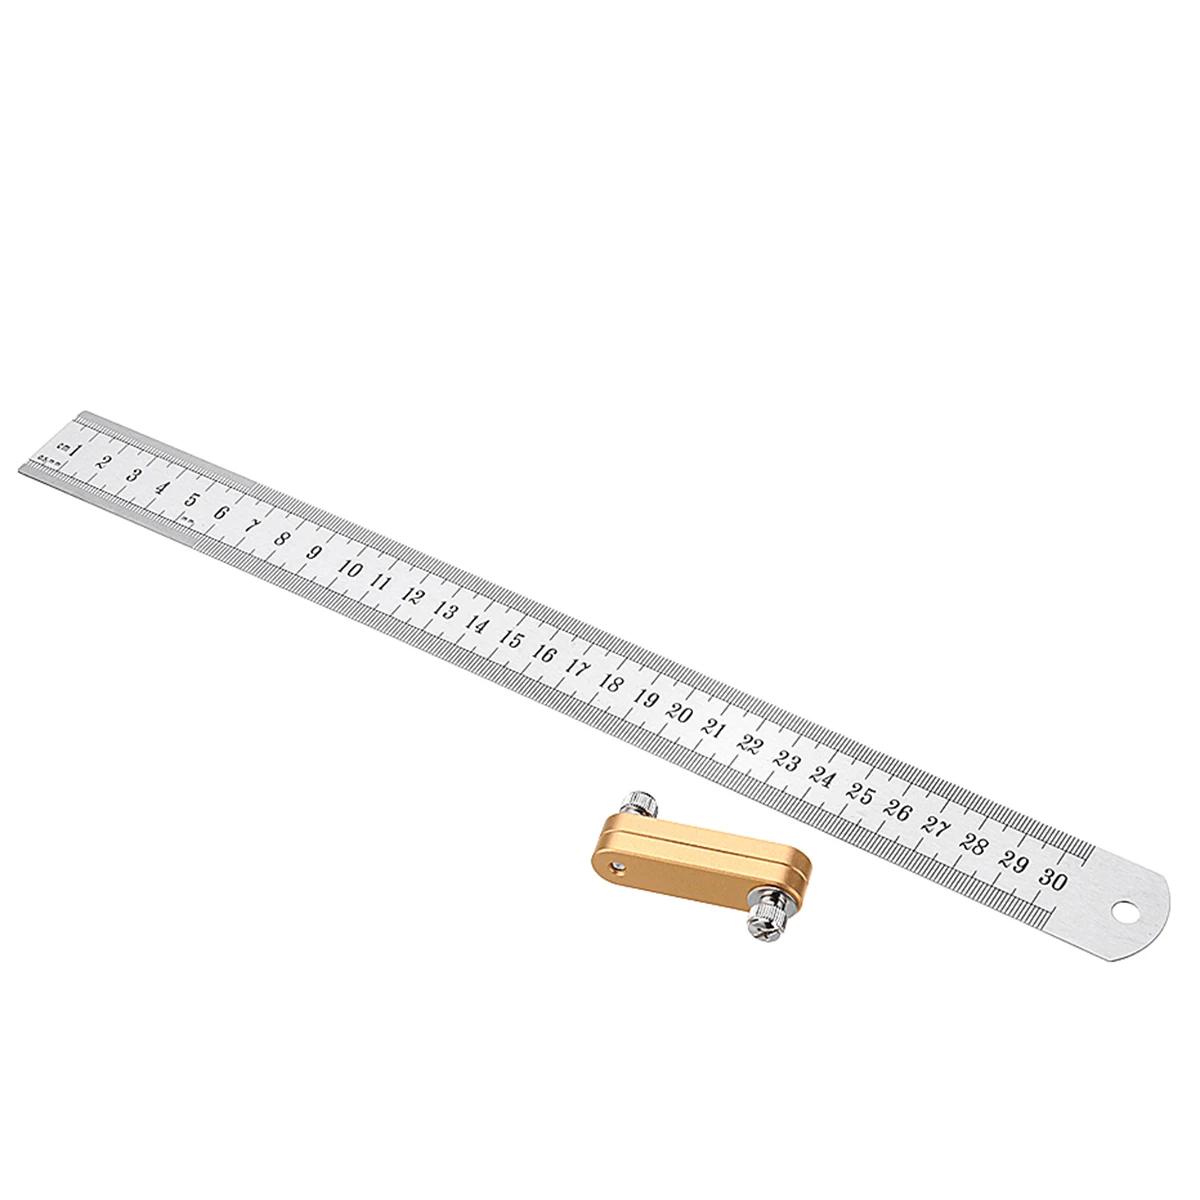 ZEAST 30 см/12 дюймов параллельная линия писец линейка точность маркировки позиционирования измерительные инструменты алюминиевый сплав+ нержавеющая сталь